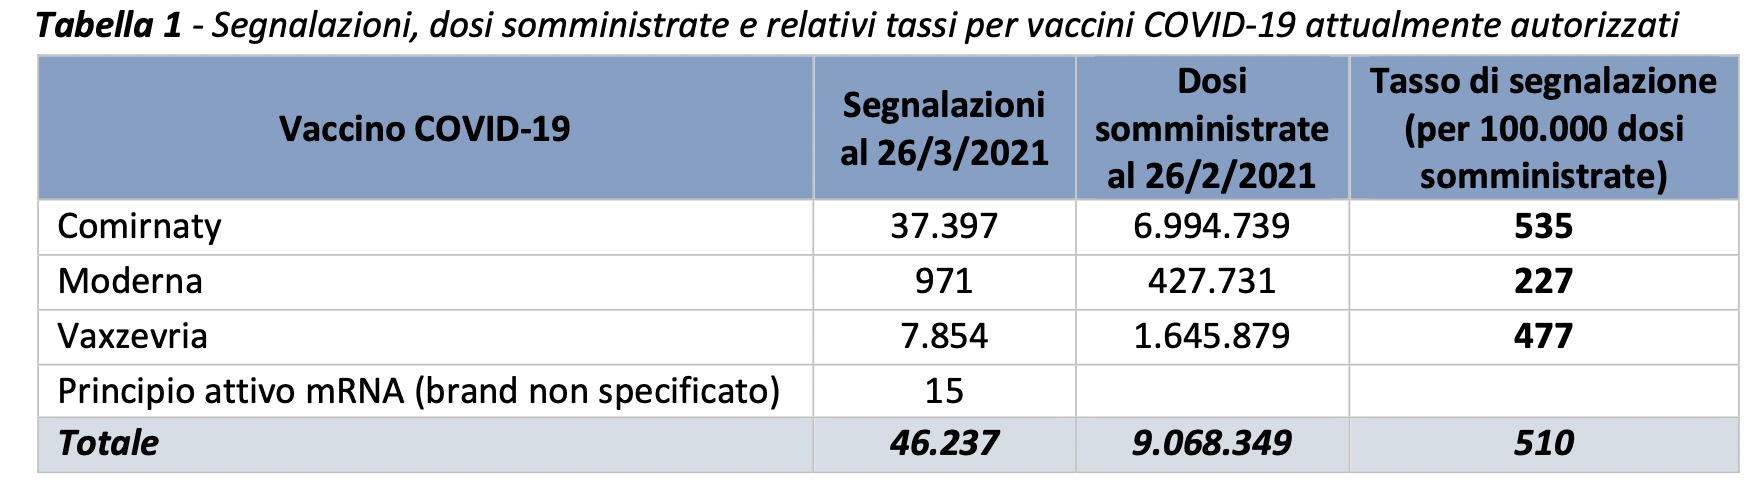 Segnalazioni_vaccini.png